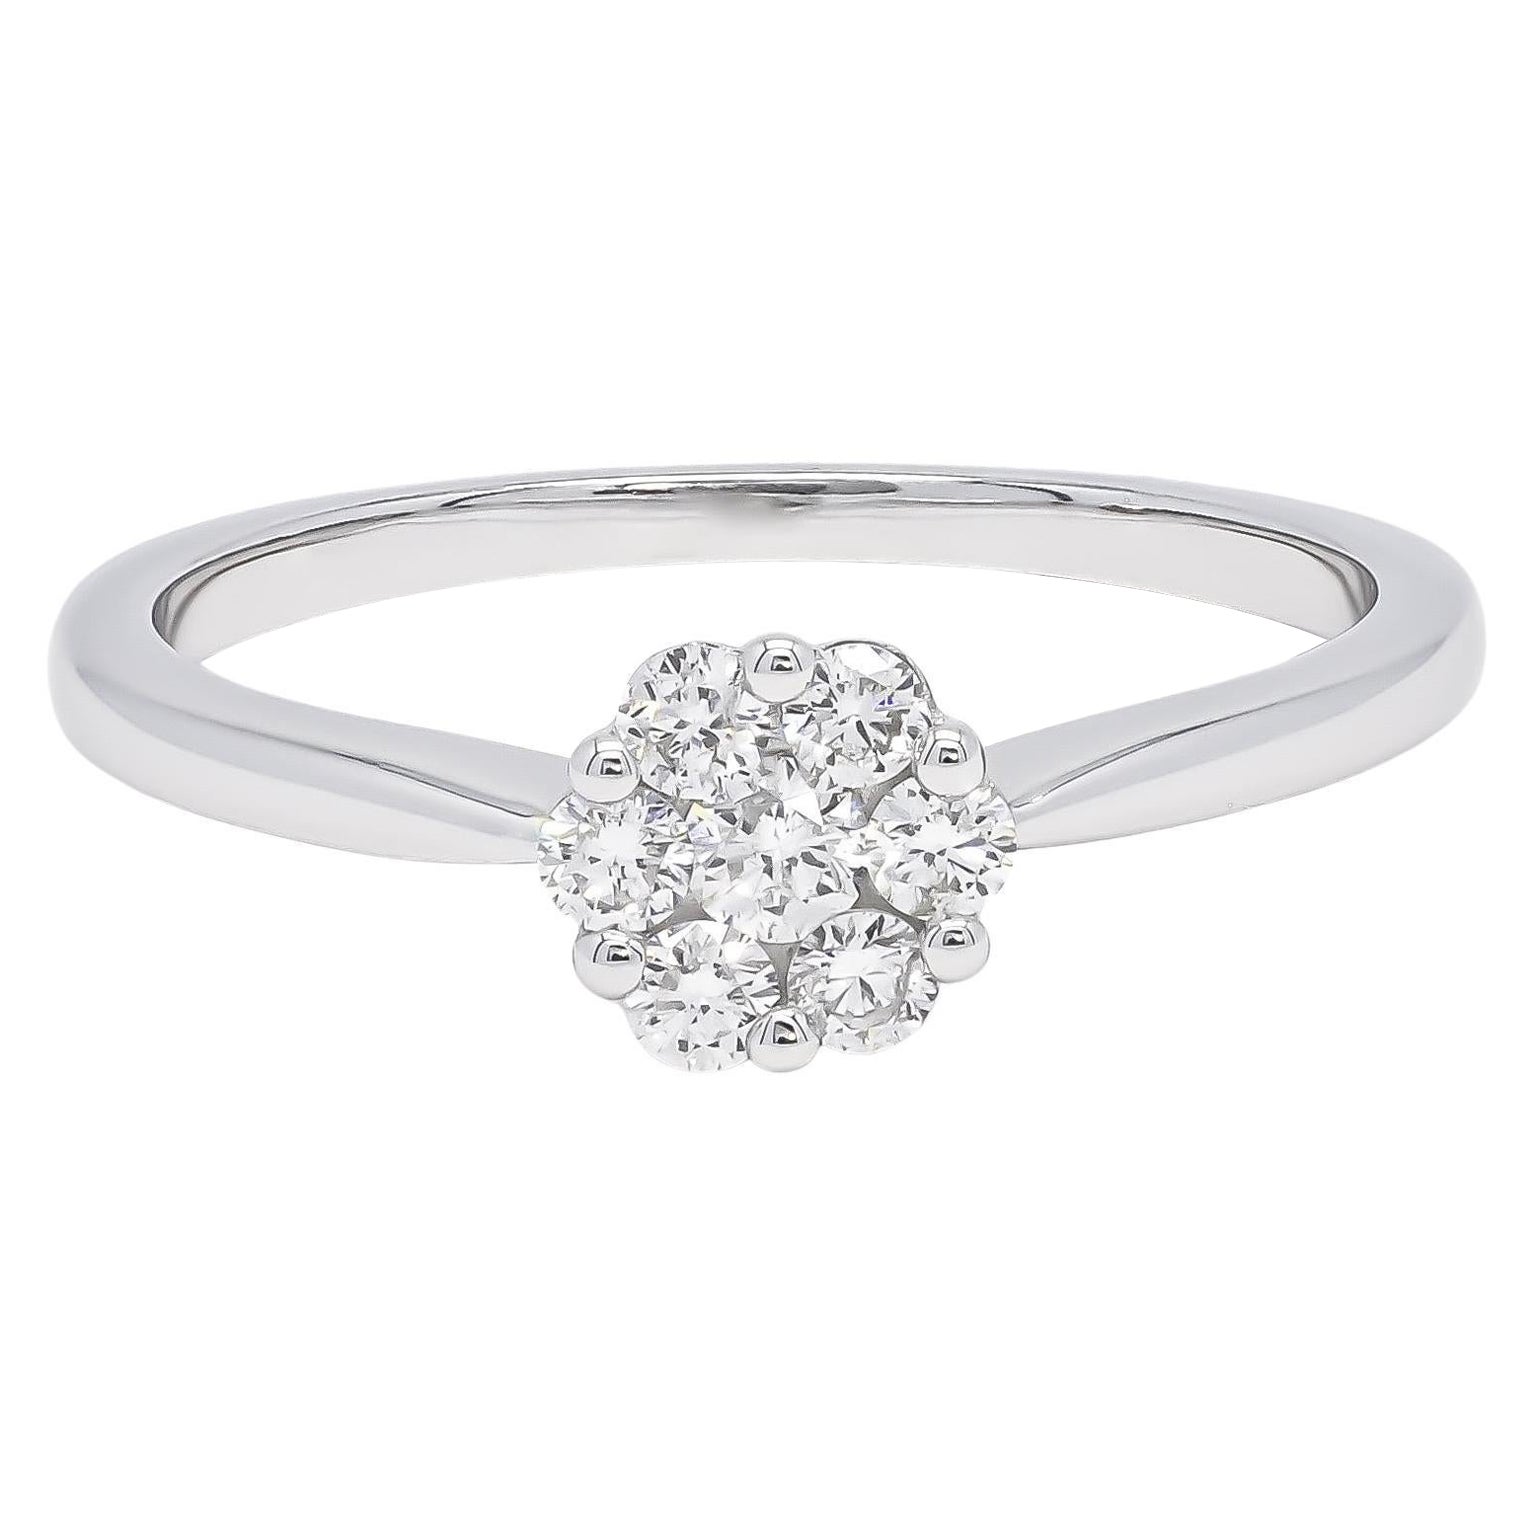  Natural Diamonds 1.00 Carat 18 Karat White Gold Classic Engagement Ring